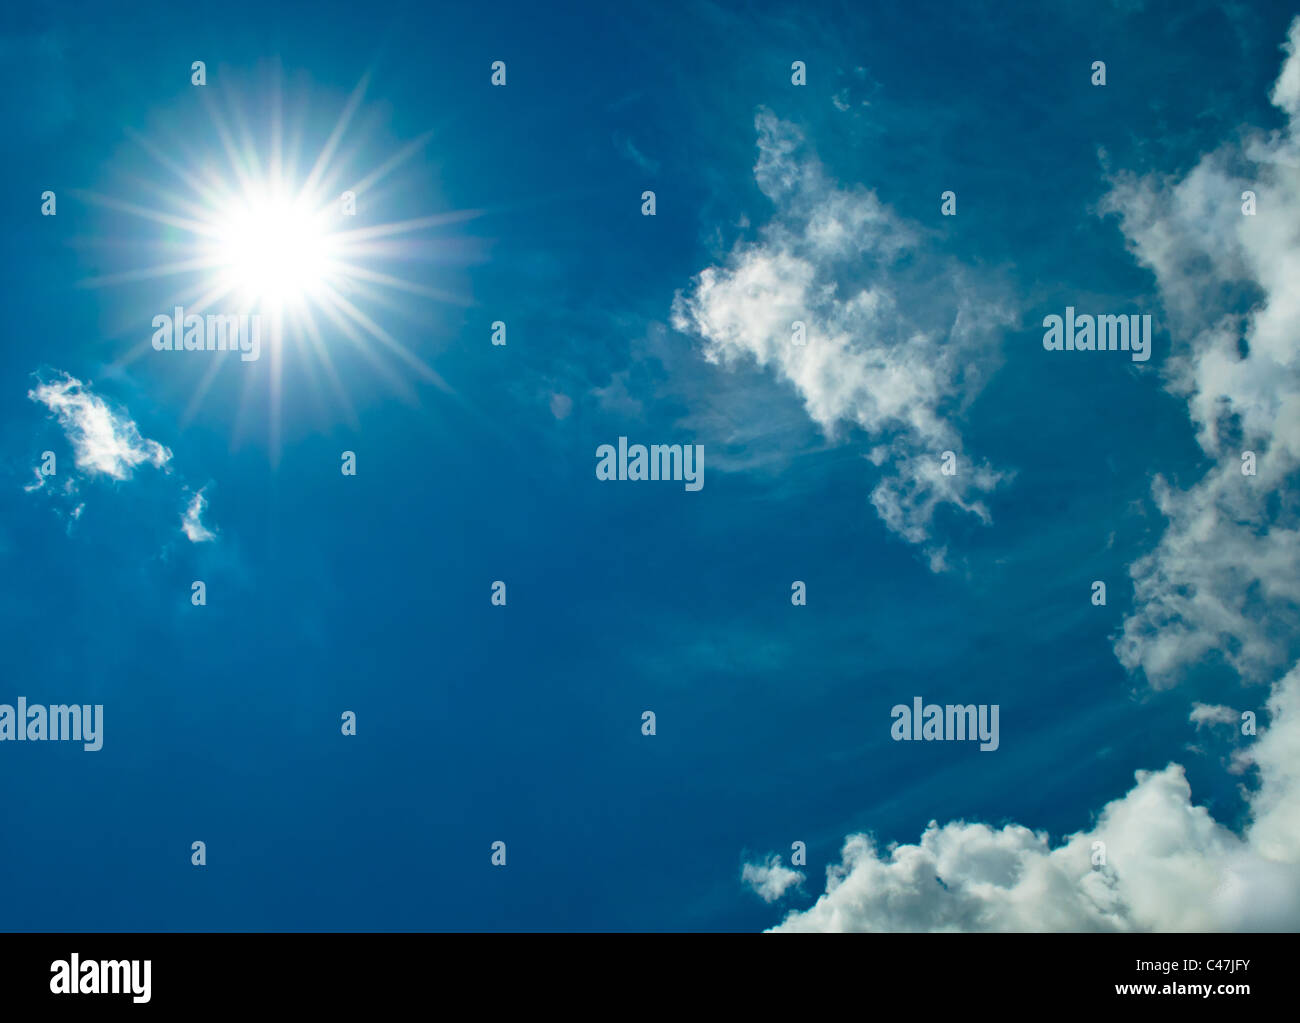 Starburst soleil Ciel bleu et nuages blancs Banque D'Images